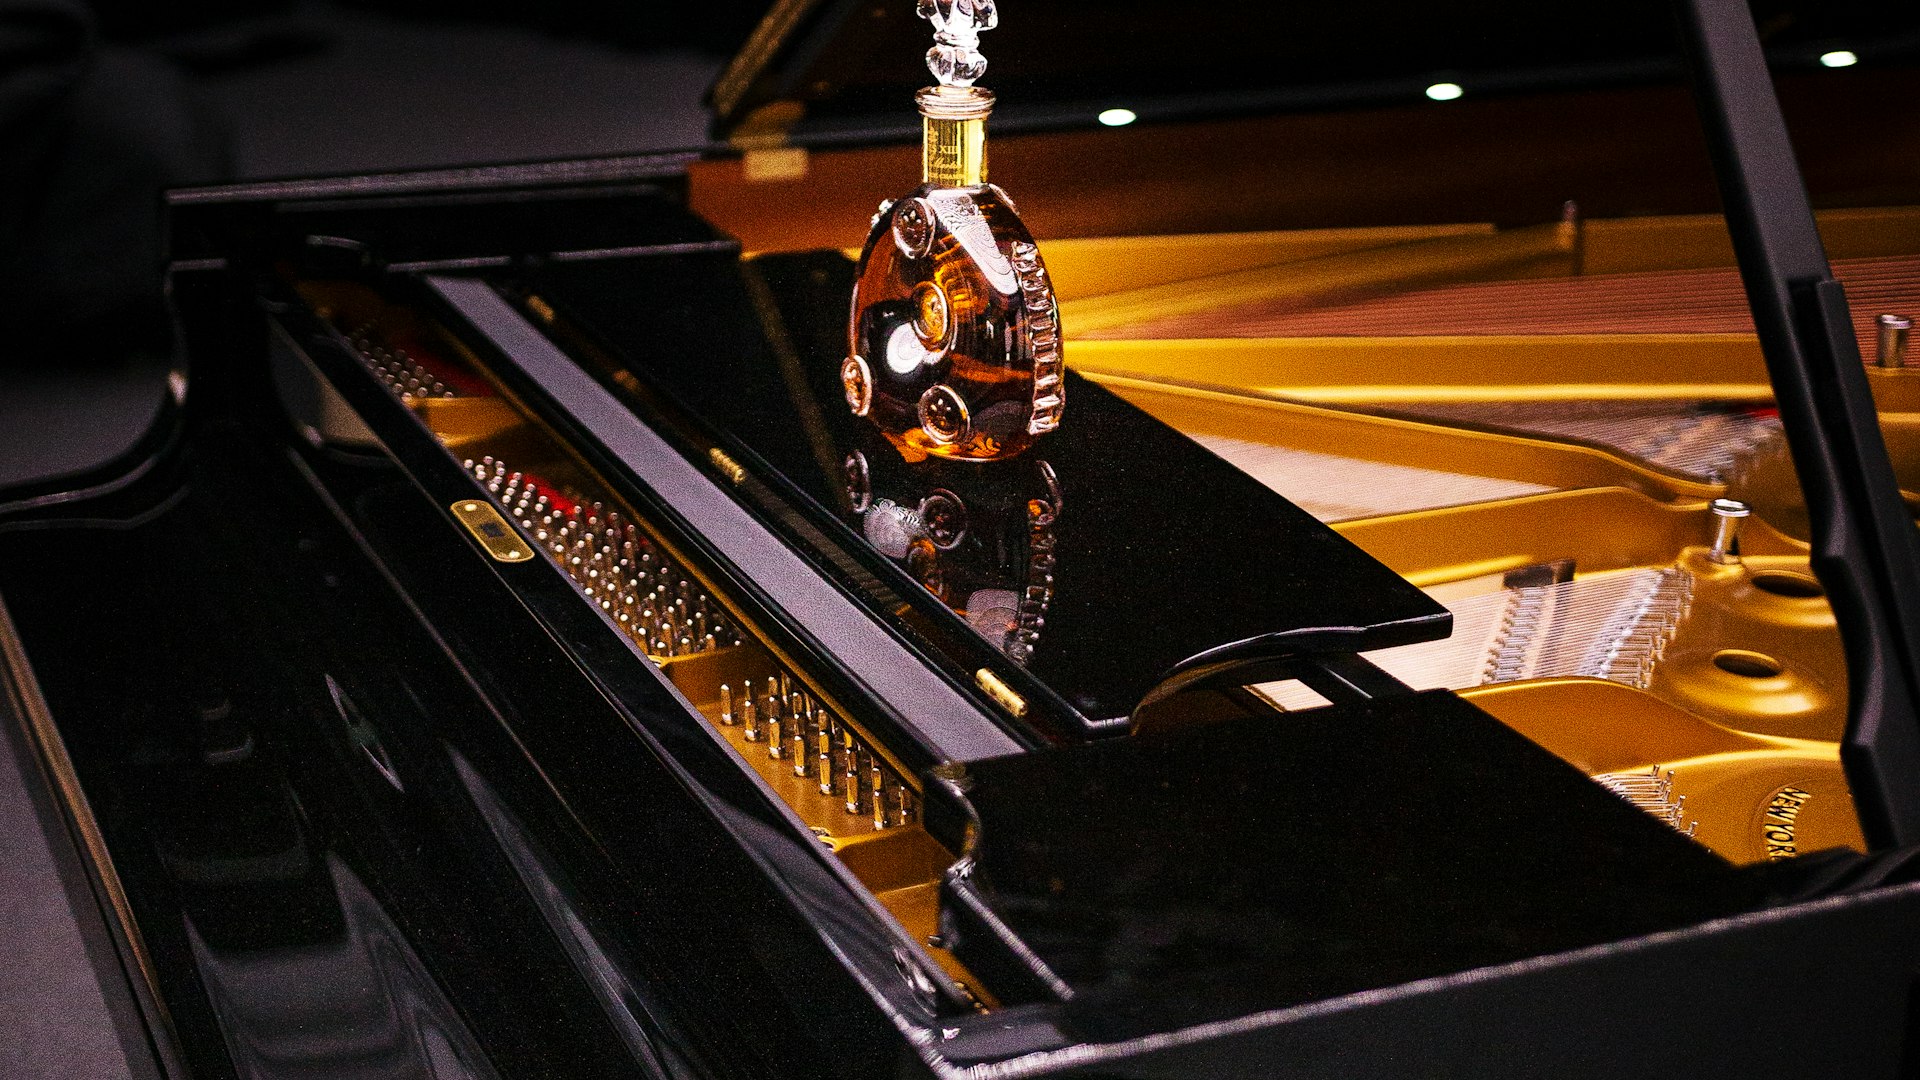 Louis XIII Cognac — An Innovative Spirit